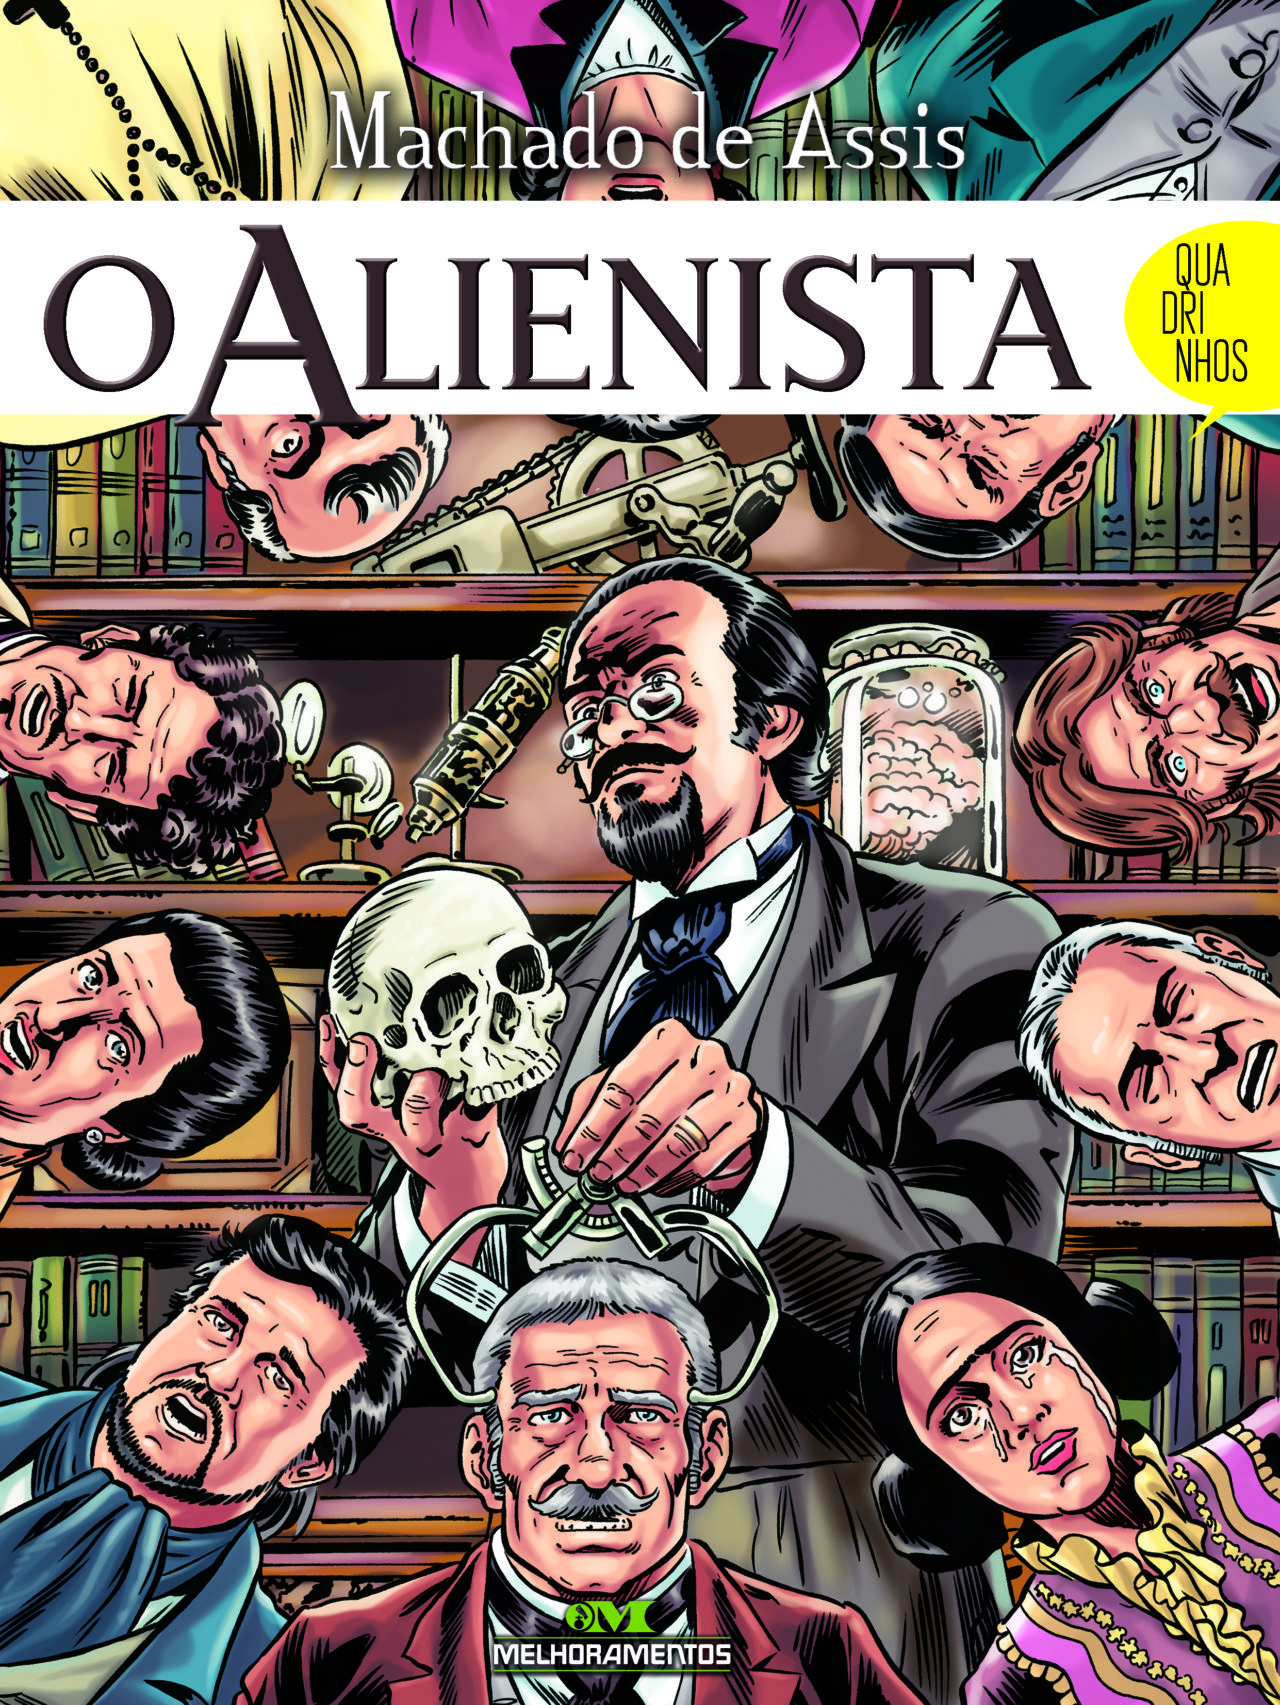 Melhoramentos lança clássicos da literatura brasileira em quadrinhos